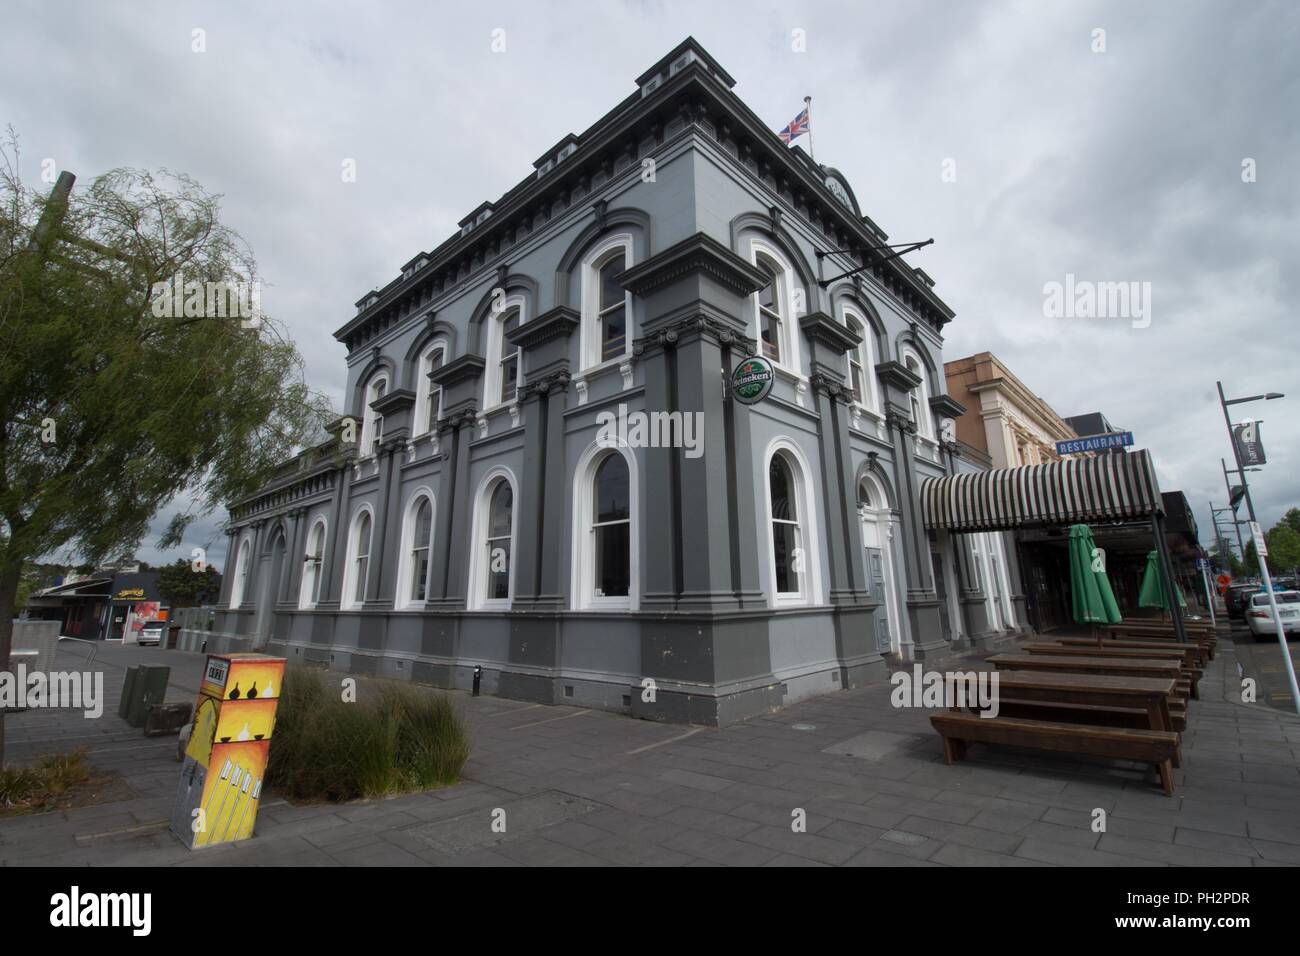 Banque historique du bâtiment néo-zélandais à Hamilton, Nouvelle-Zélande sur l'image, Novembre, 2017. () Banque D'Images